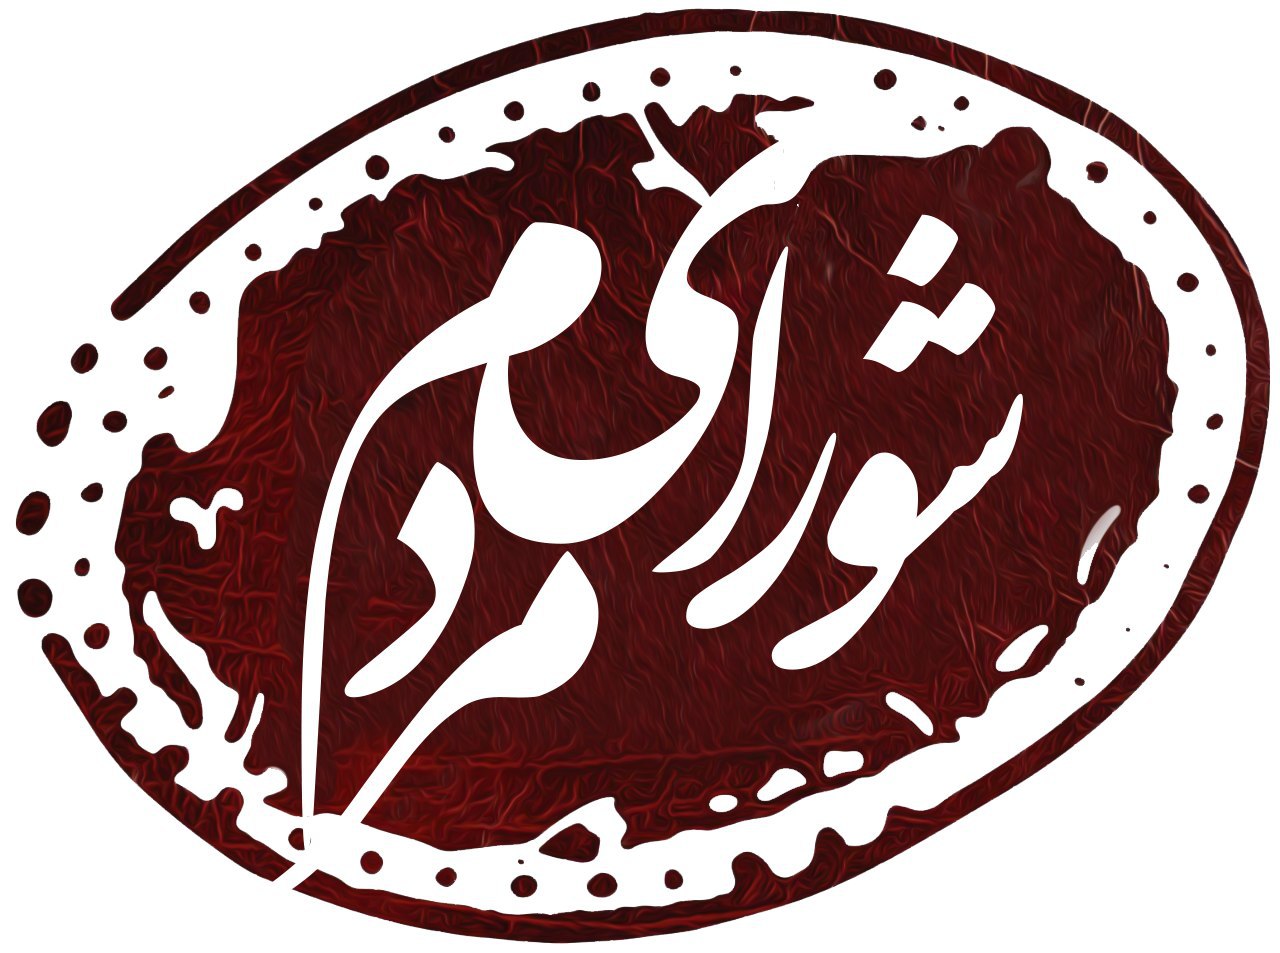 فهرست جمعیت جوانان انقلاب اسلامی با عنوان "شورای مردم"در انتخابات شورای شهر تهران  منتشر شد